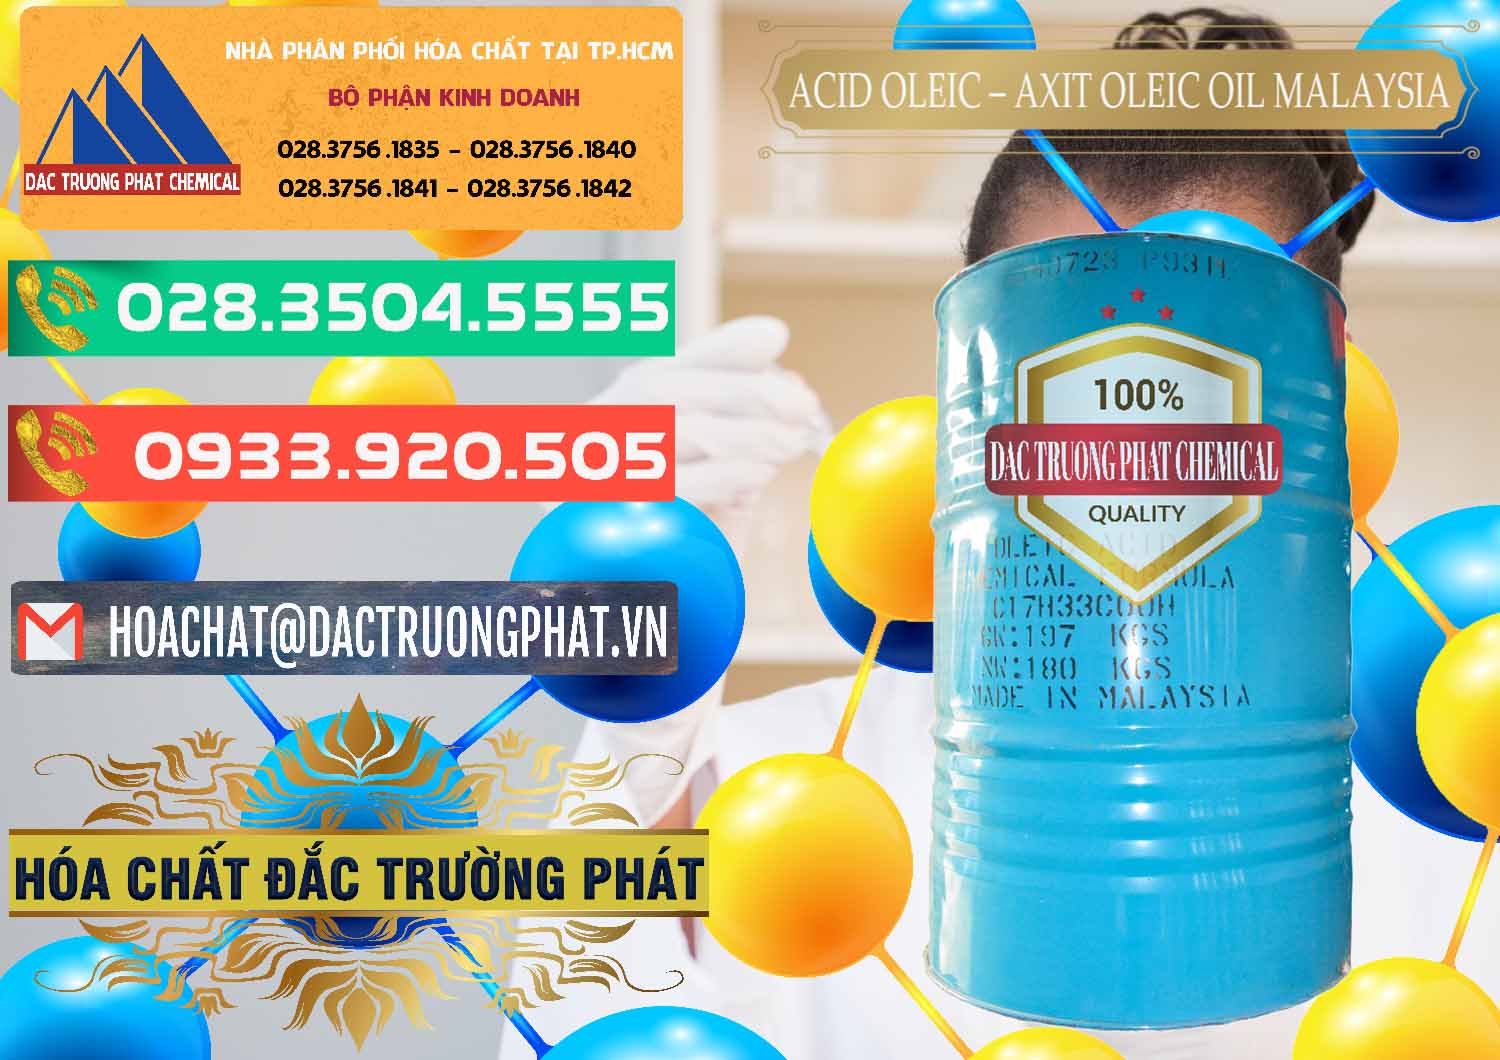 Cty chuyên bán ( cung cấp ) Acid Oleic – Axit Oleic Oil Malaysia - 0013 - Công ty chuyên phân phối và cung ứng hóa chất tại TP.HCM - congtyhoachat.com.vn